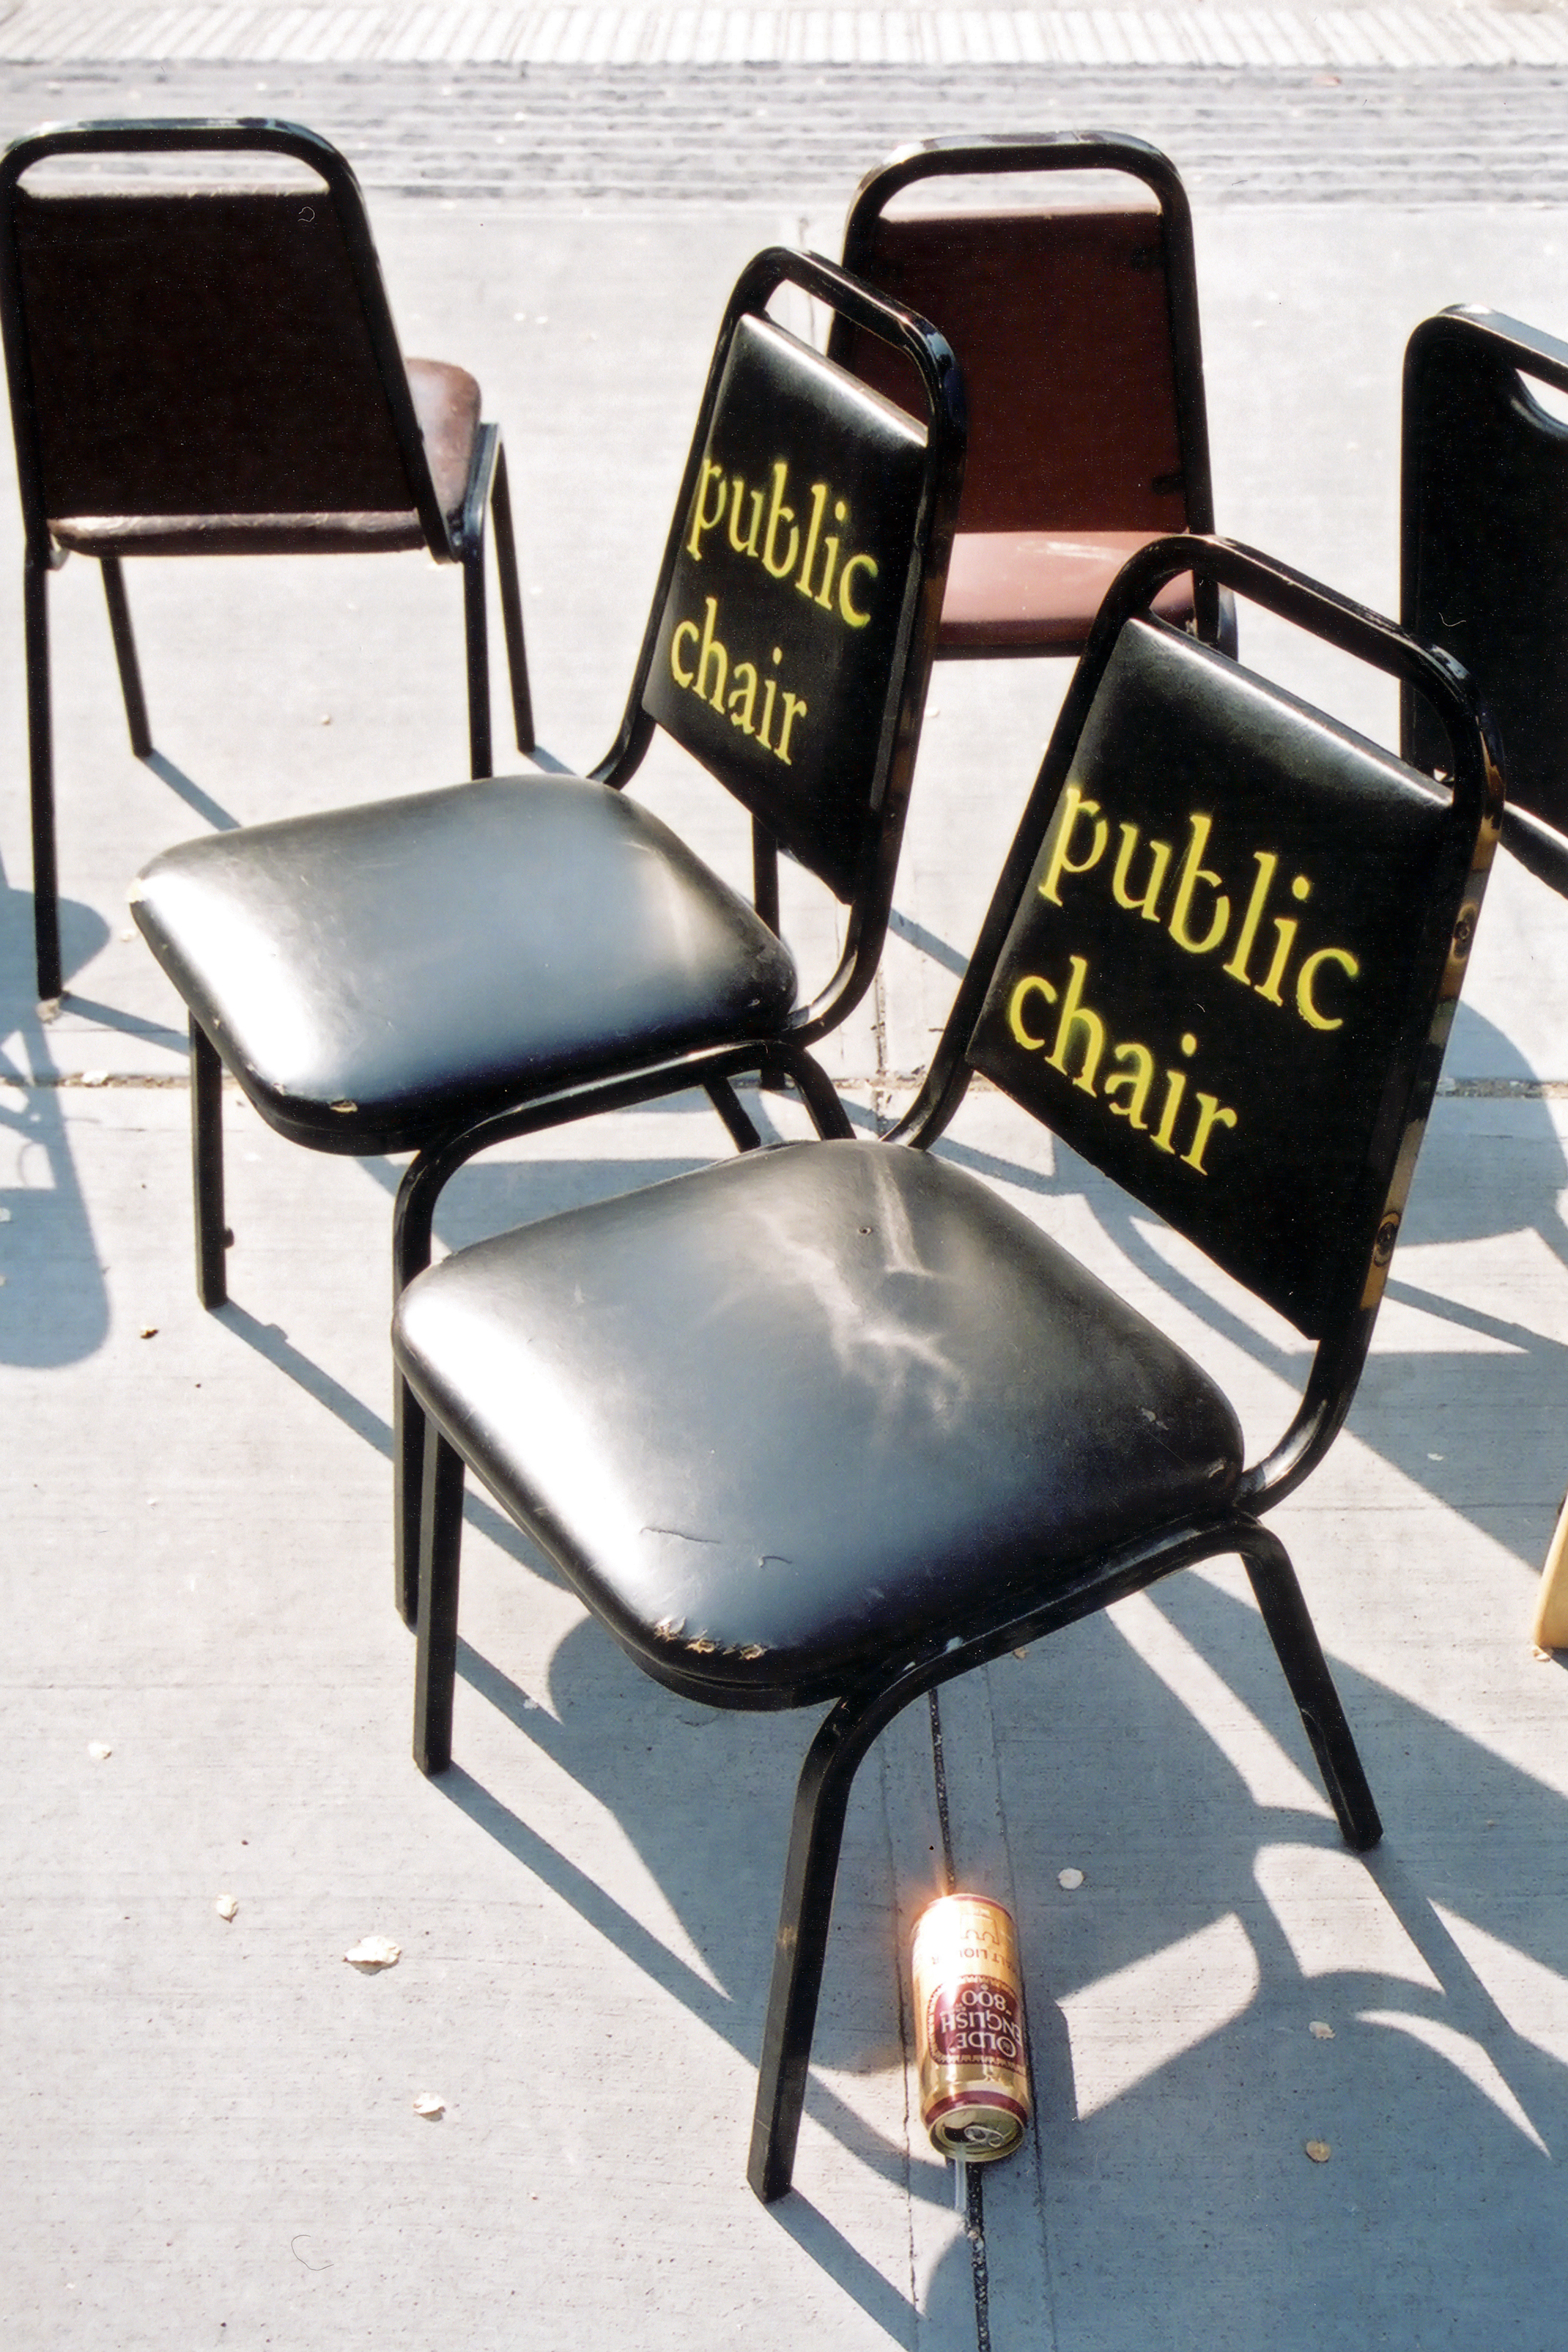 Public Chair